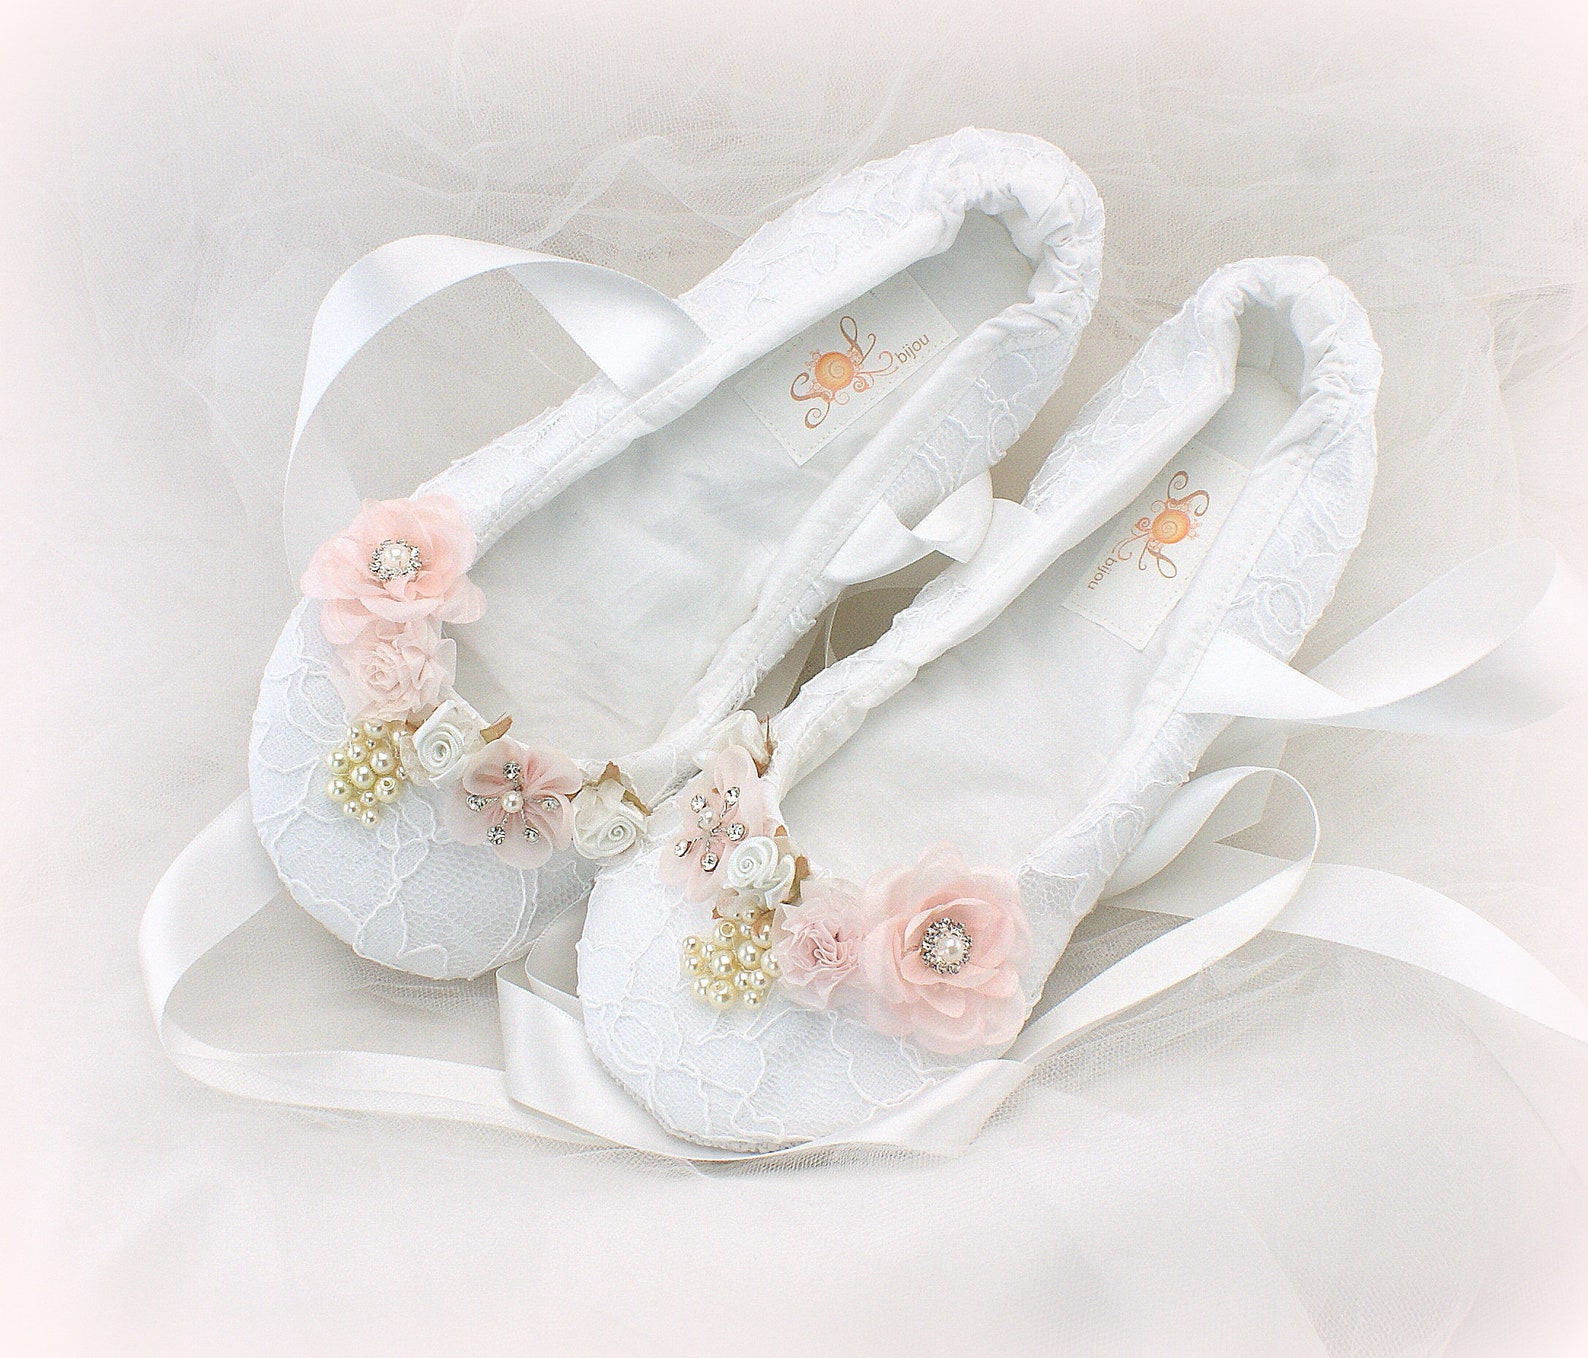 wedding ballet slippers cheap